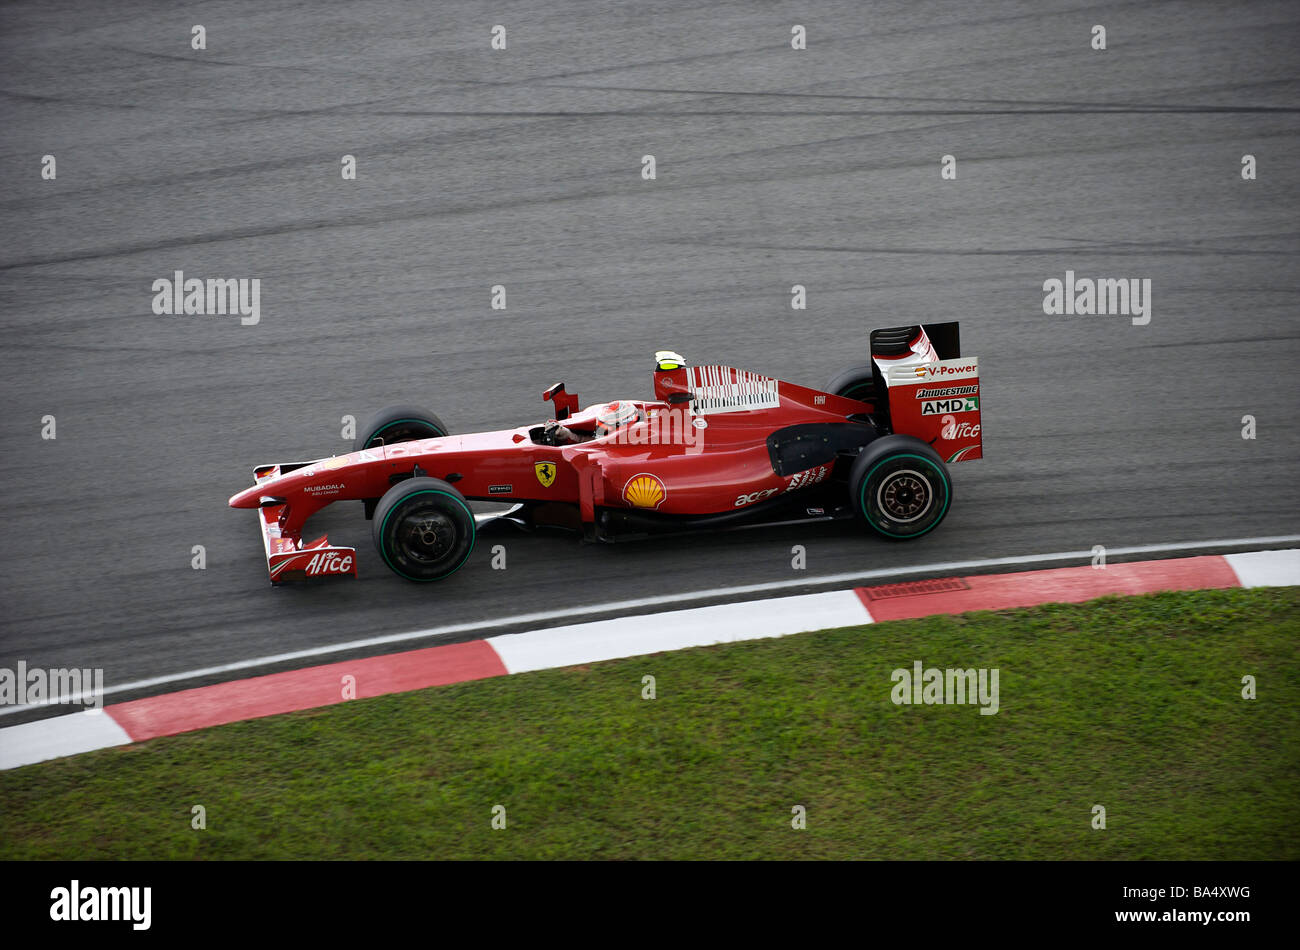 Scuderia Ferrari Marlboro driver Kimi Raikkonen of Finland steers his ...